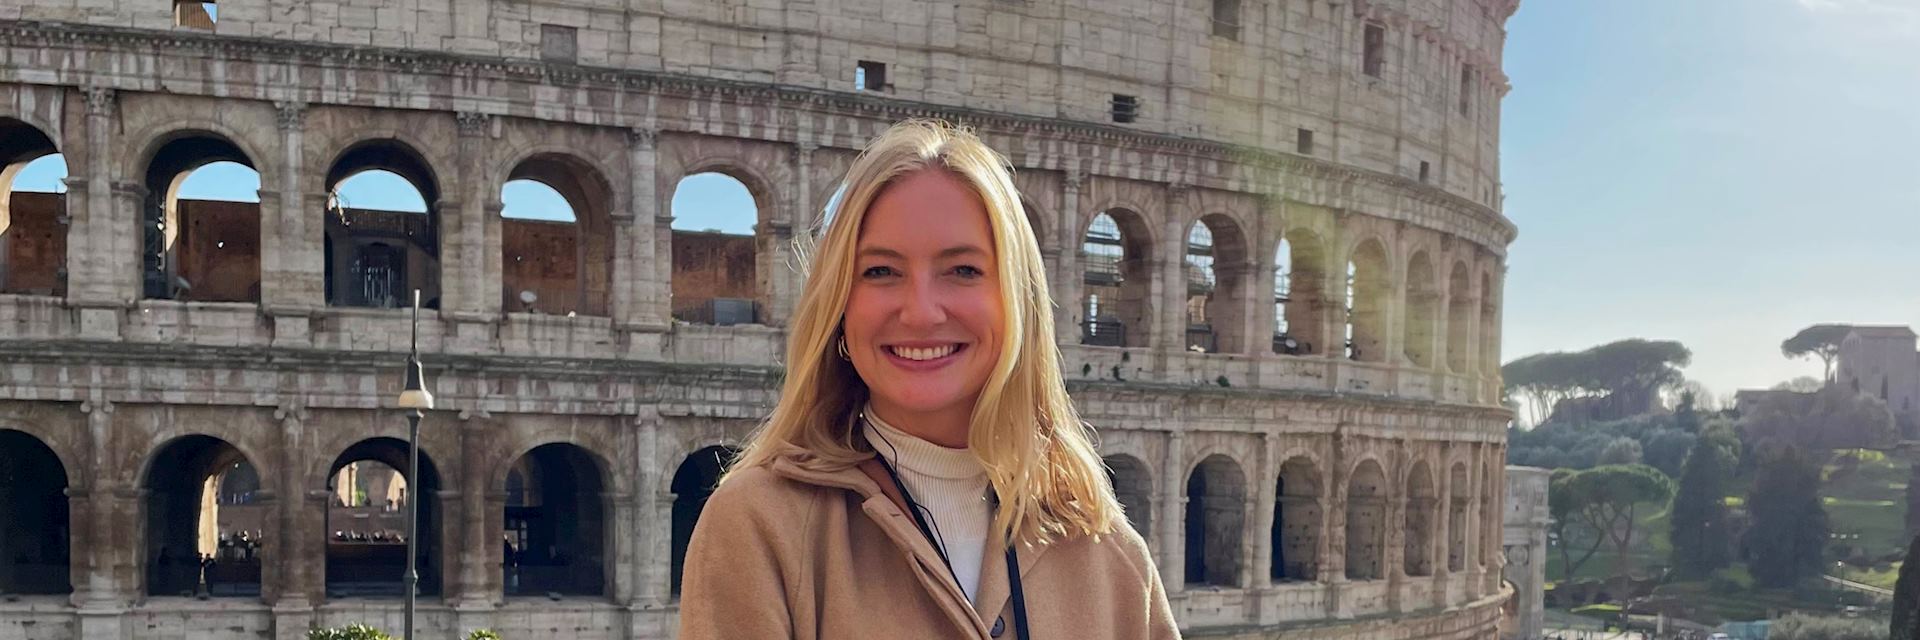 Caroline in Rome, Italy